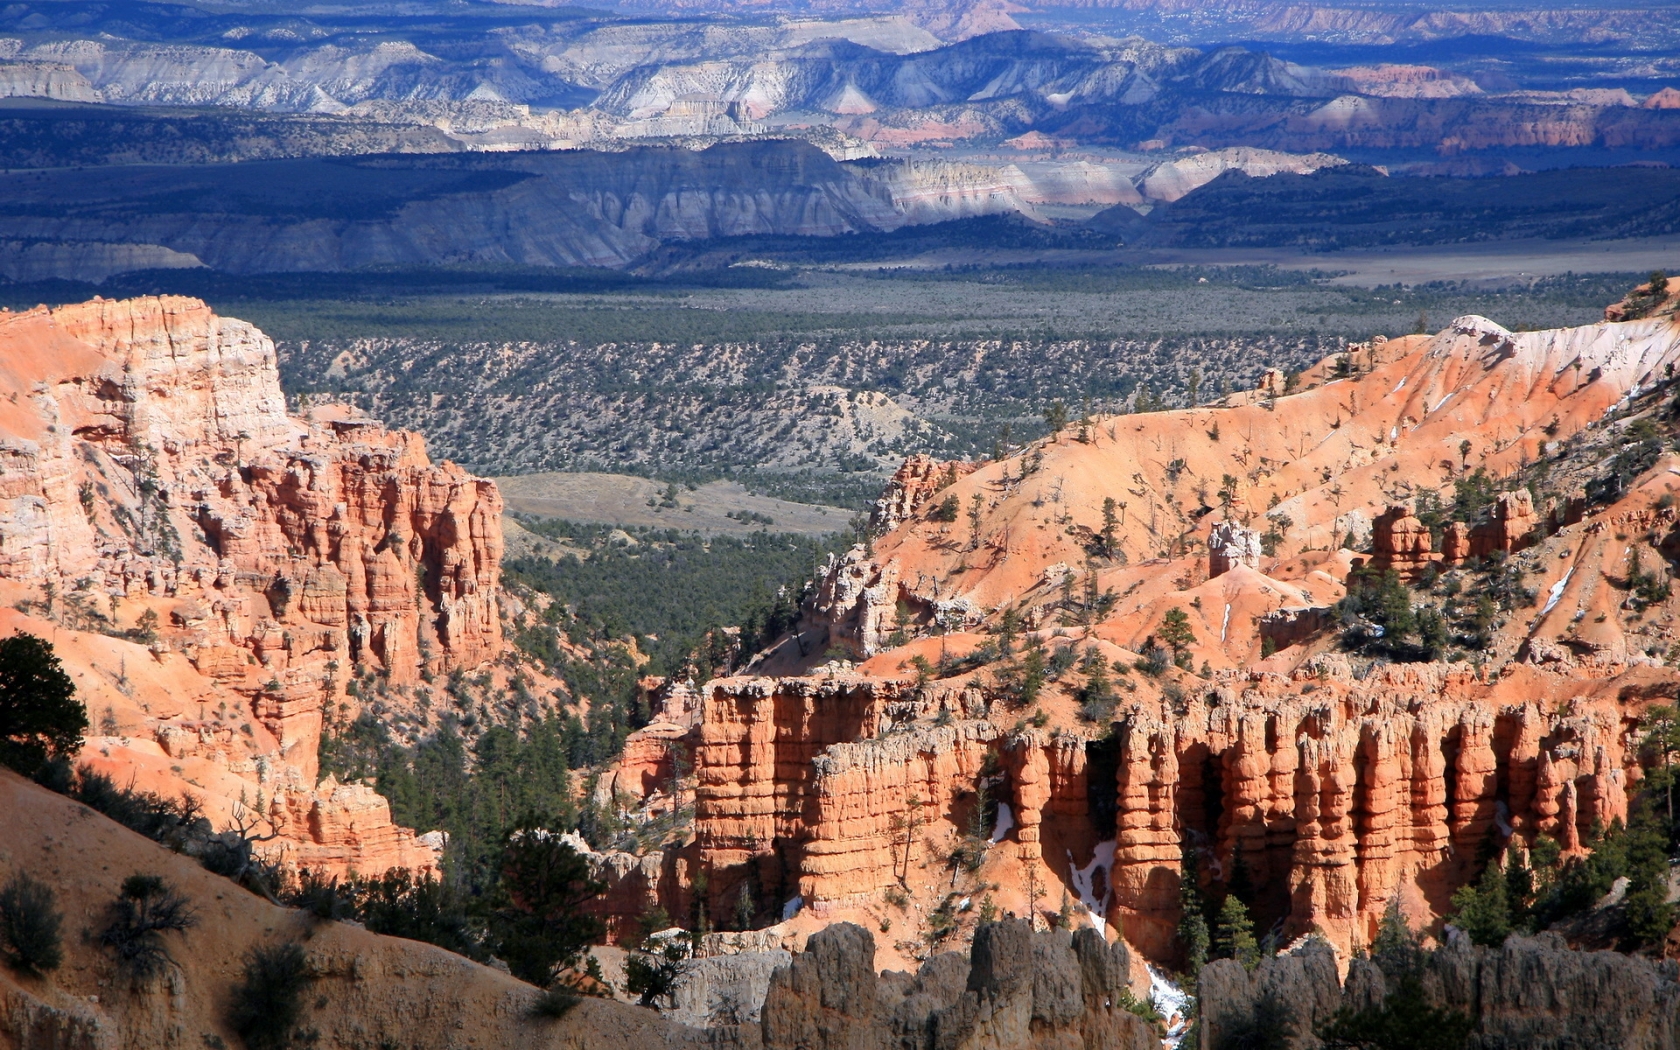 Colorado Canyon View for 1680 x 1050 widescreen resolution